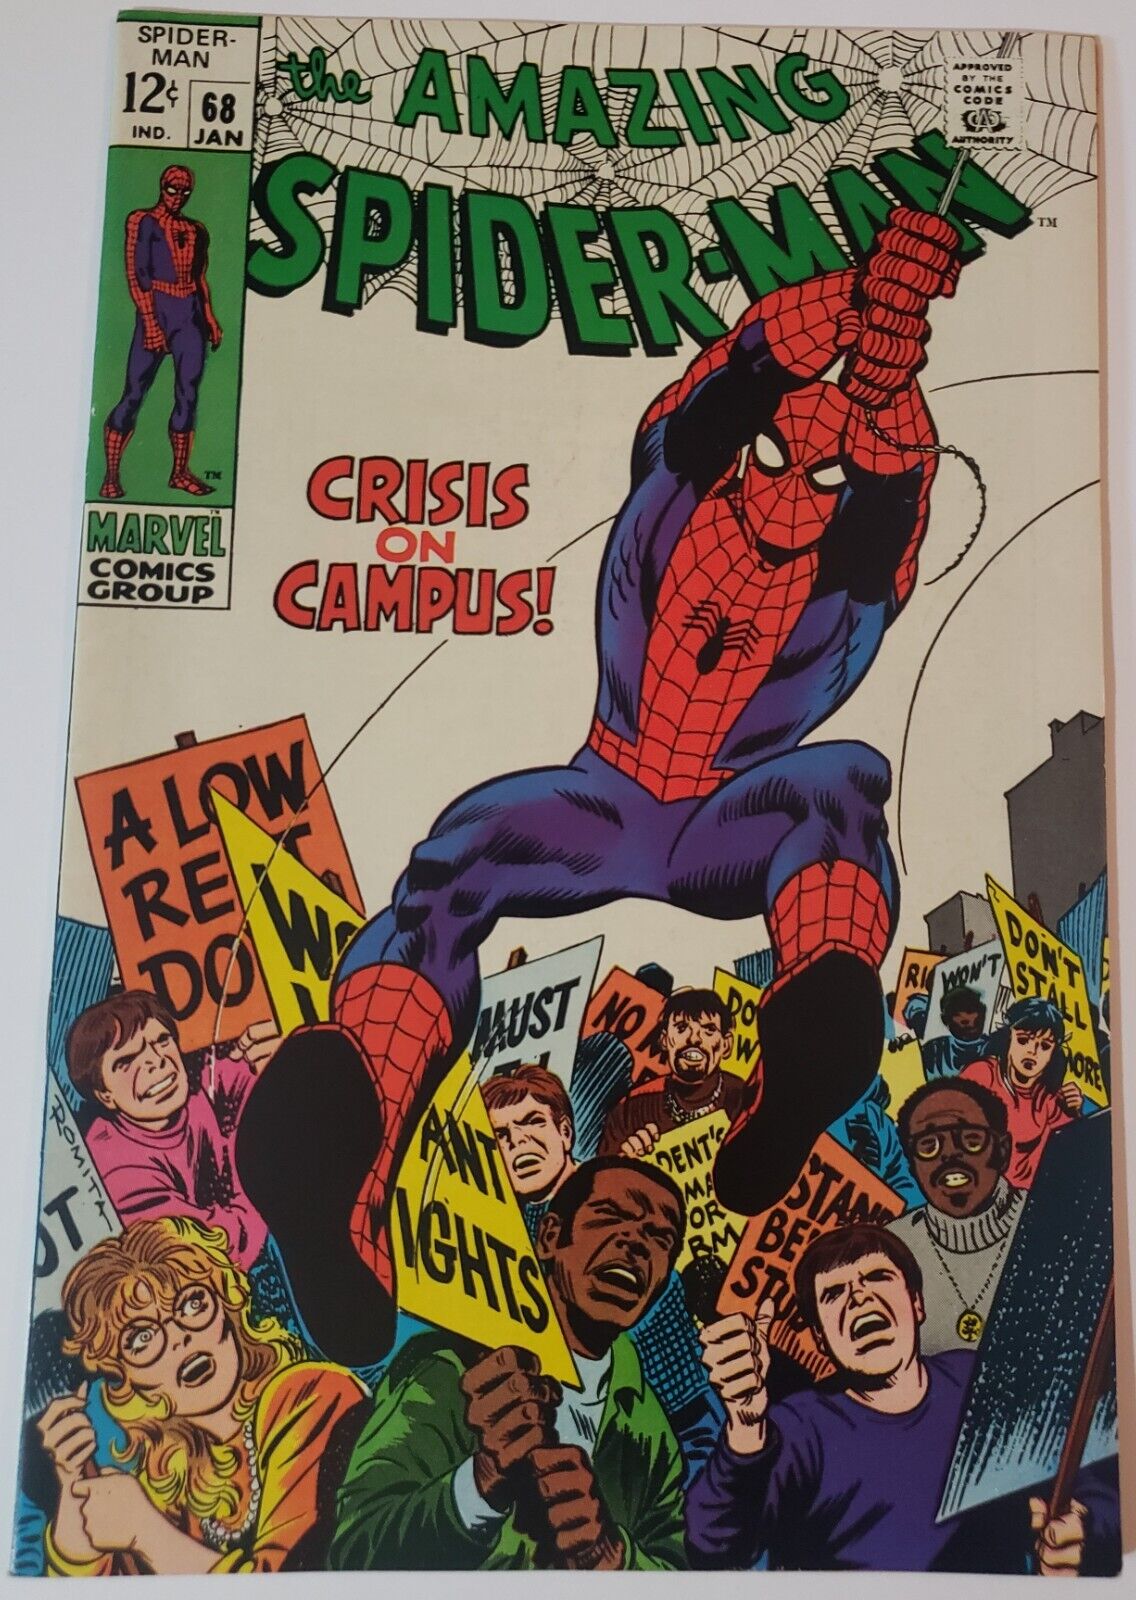 1969 Amazing Spiderman 68 Crisis on Campus Marvel Comics Romita Cover VF+